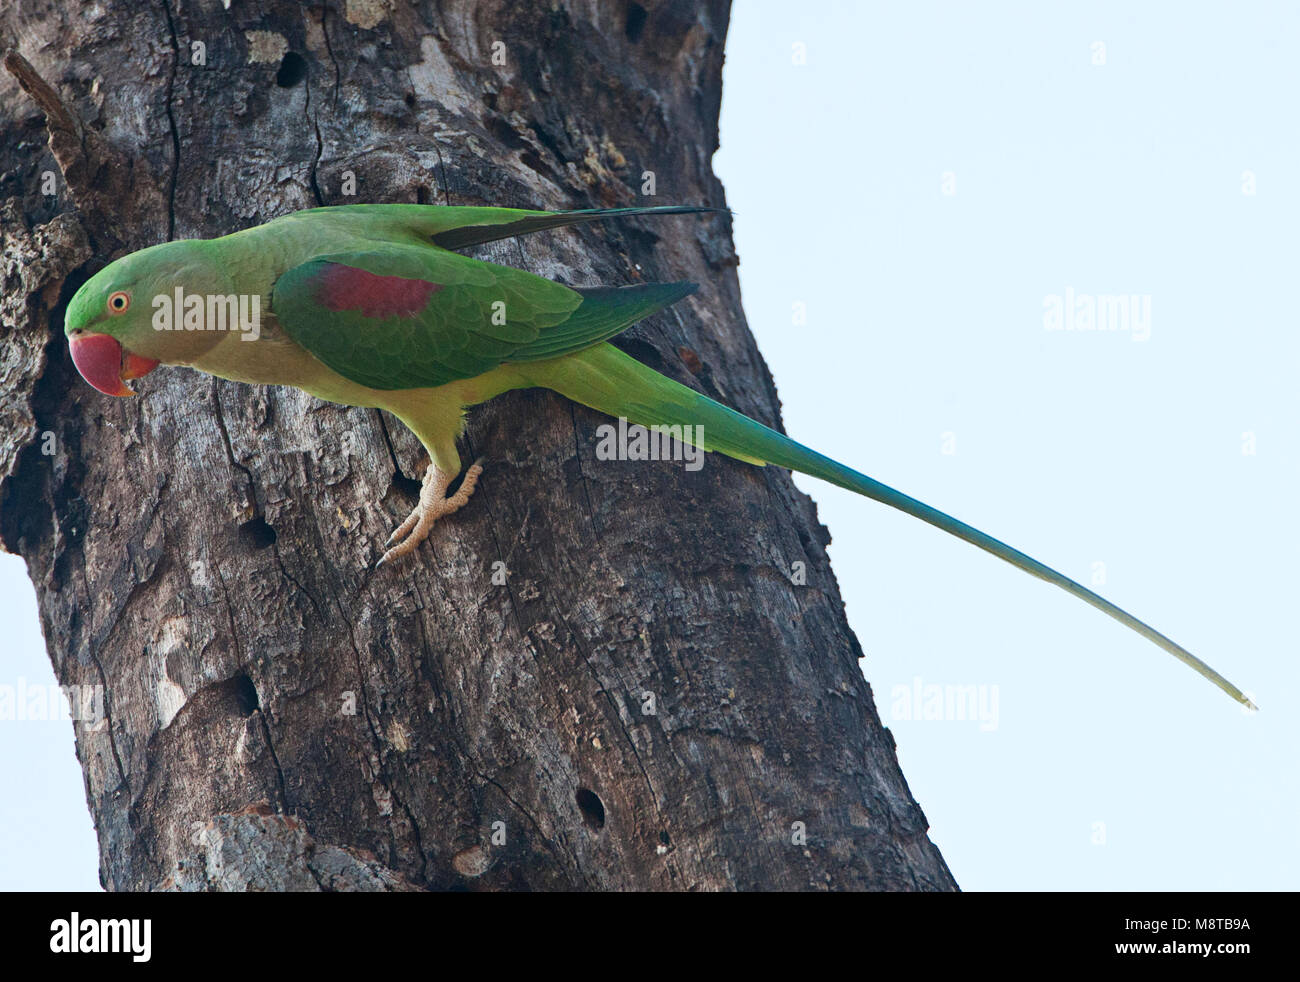 Alexanderparkiet zittend in een boom; Alexandrine Parakeet (Psittacula eupartia) perched in a tree Stock Photo